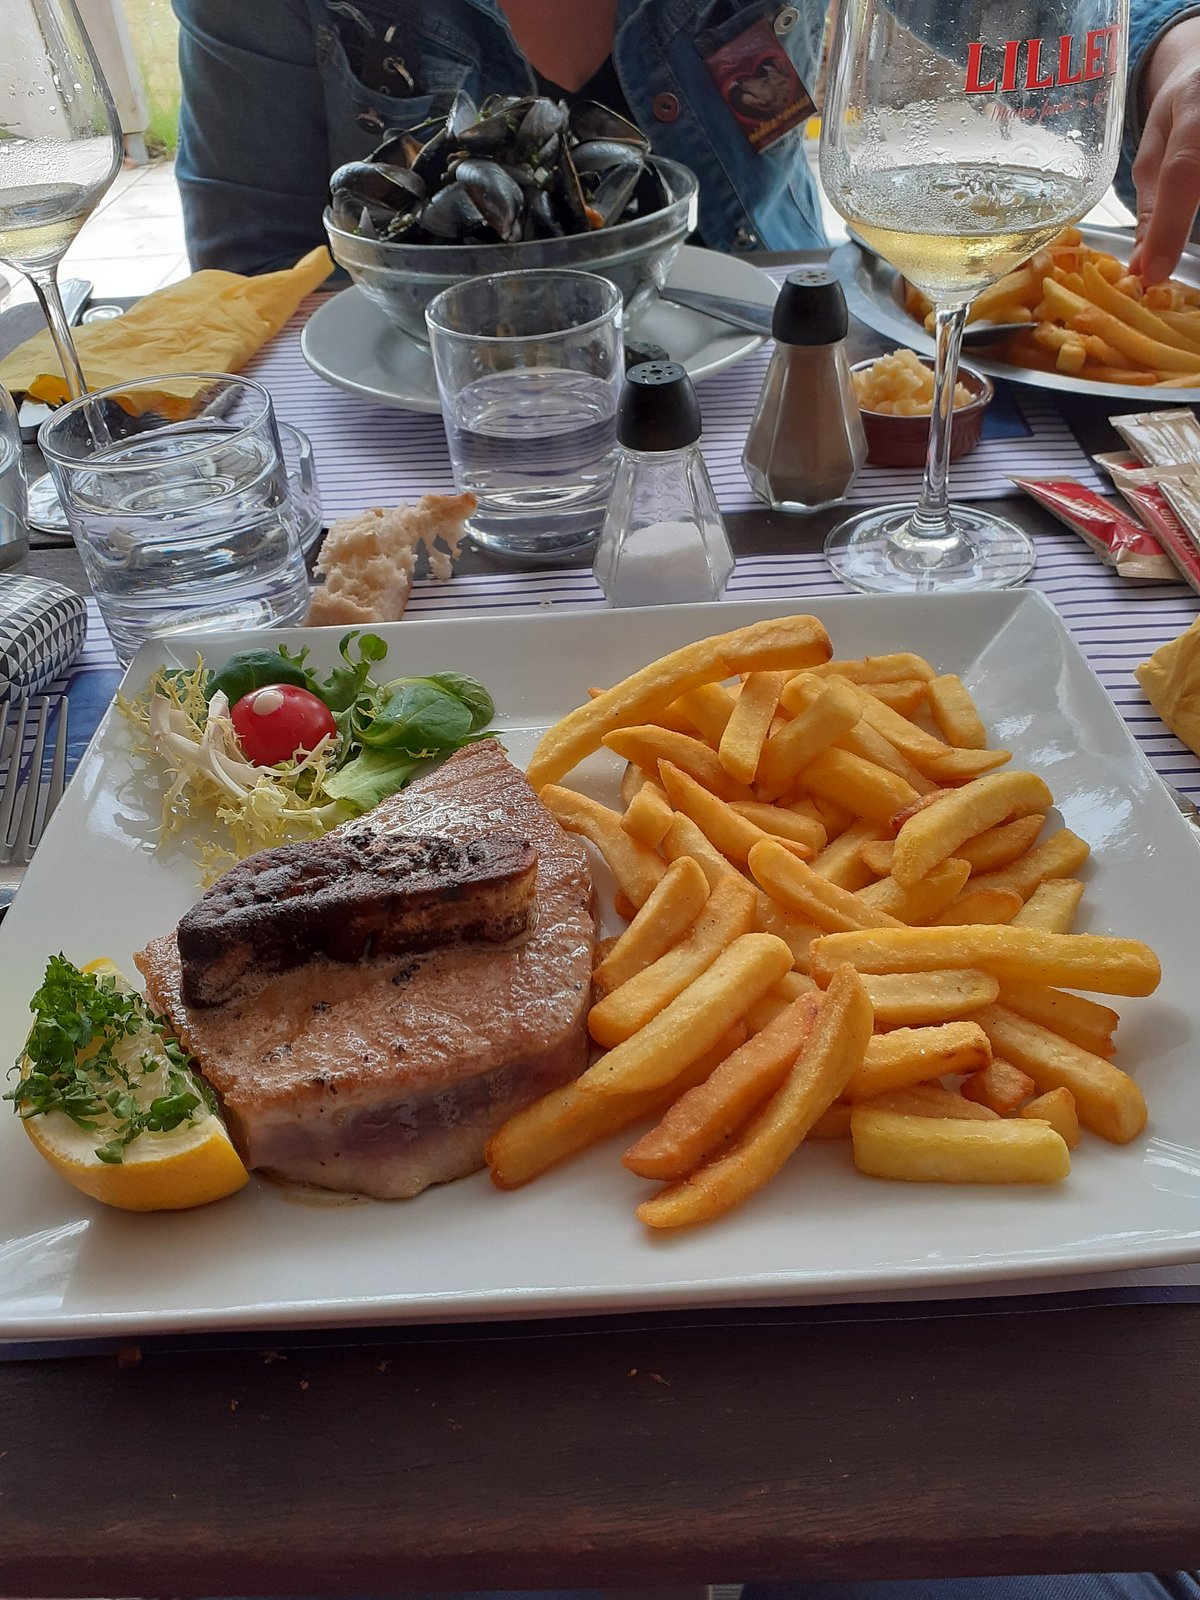 LE TABLIER, Audenge - Restaurant Reviews, Photos & Phone Number